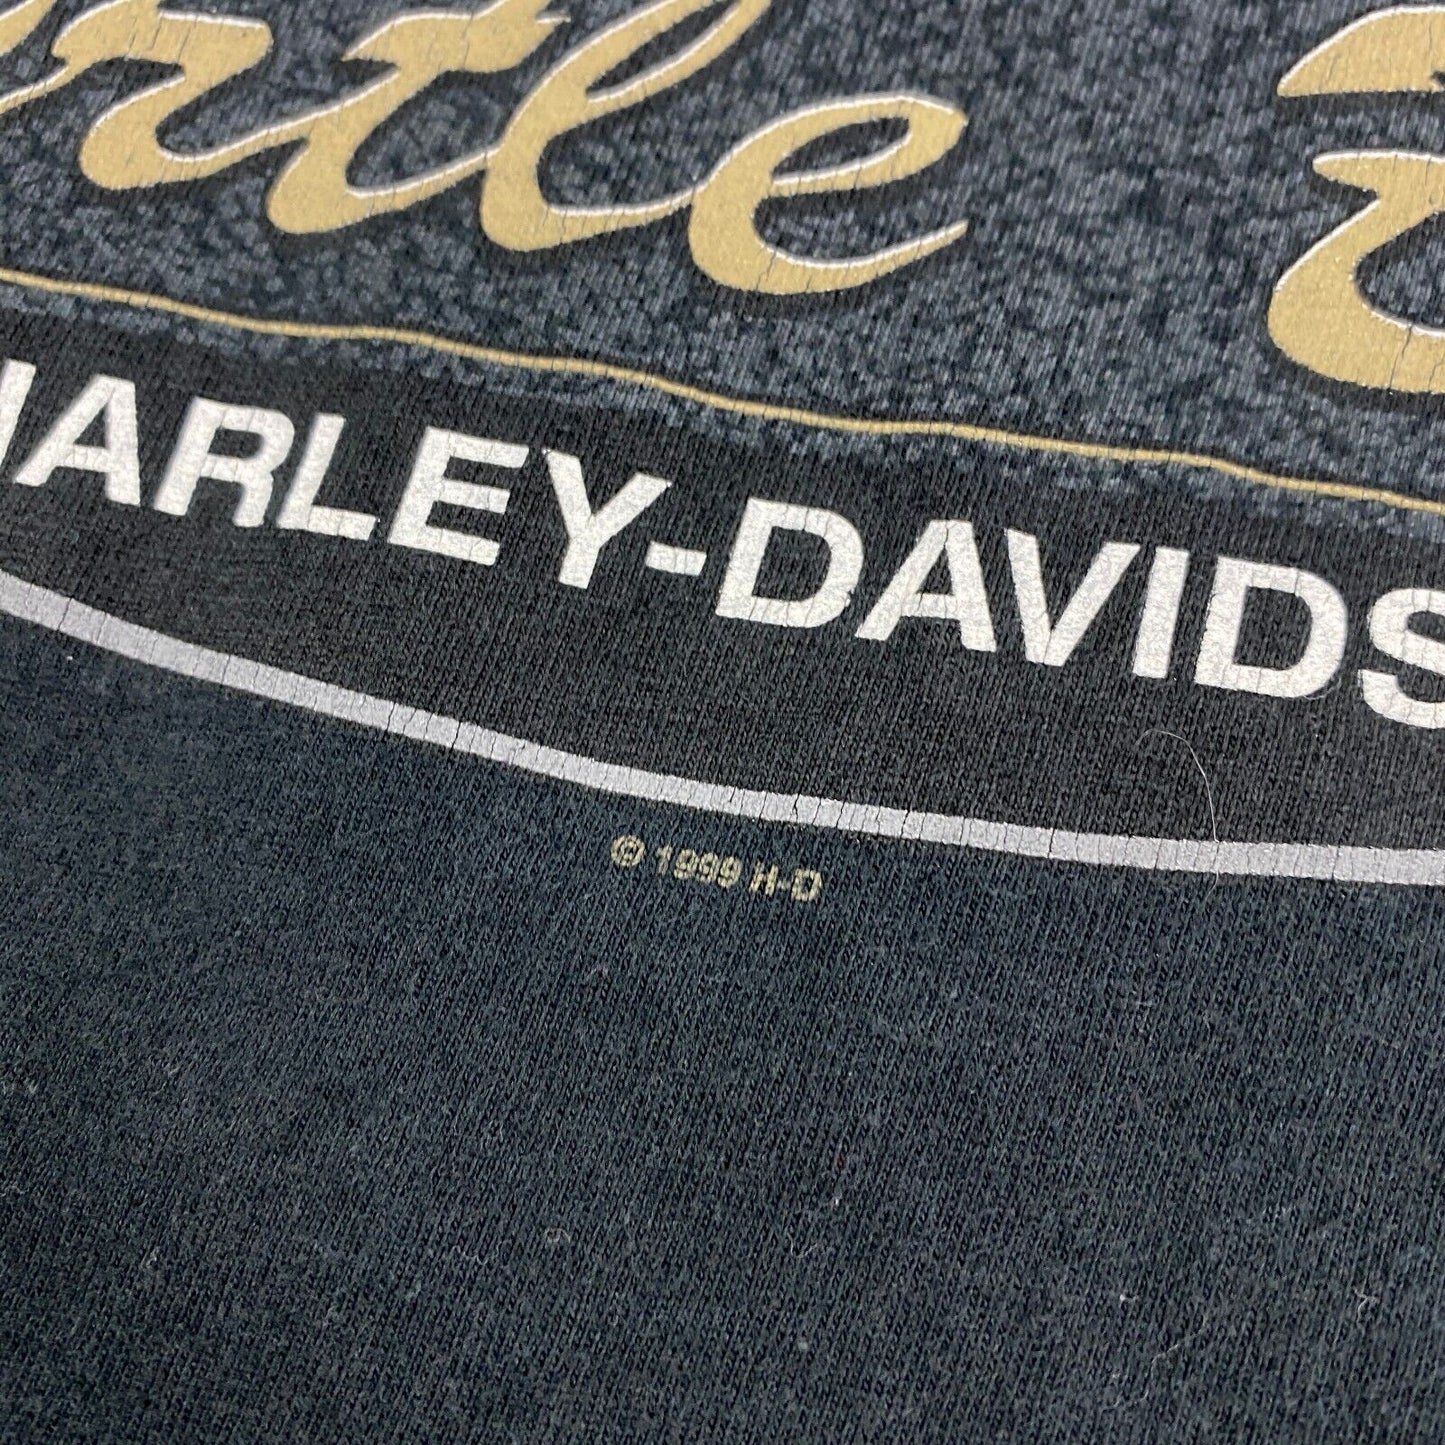 VINTAGE 1999 Harley Davidson Myrtle Beach Black Biker T-Shirt sz Large Men